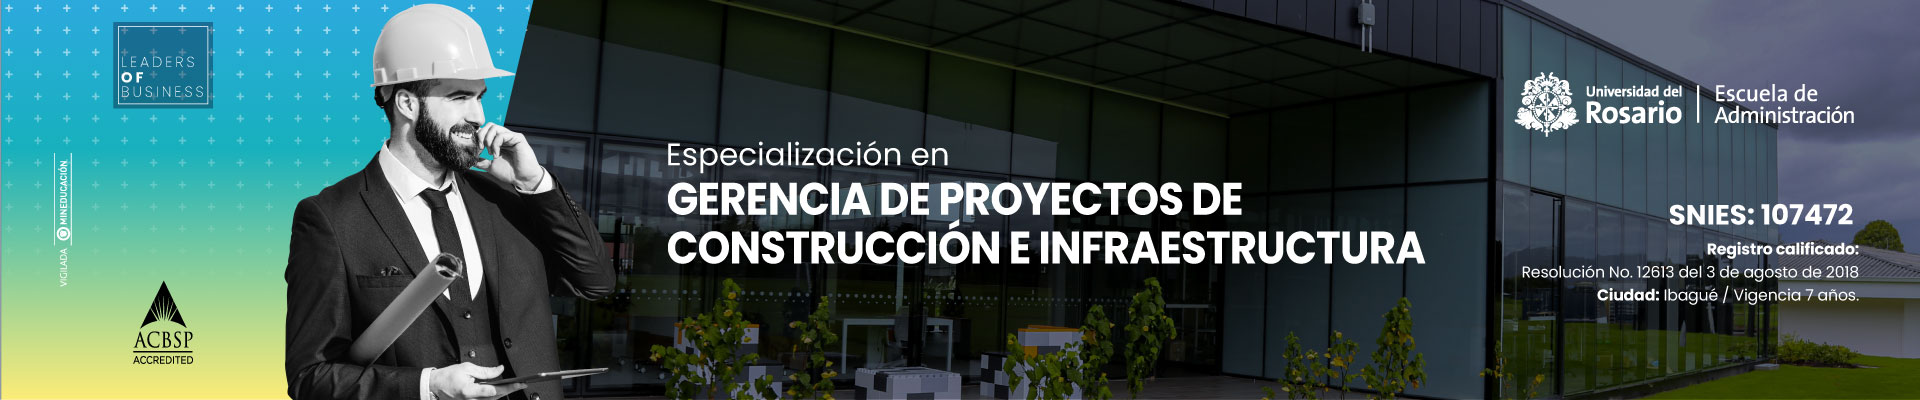 Imagen de cabecera para la especialización en Gerencia de Proyectos de Construcción e Infraestructura de la Universidad de Ibagué